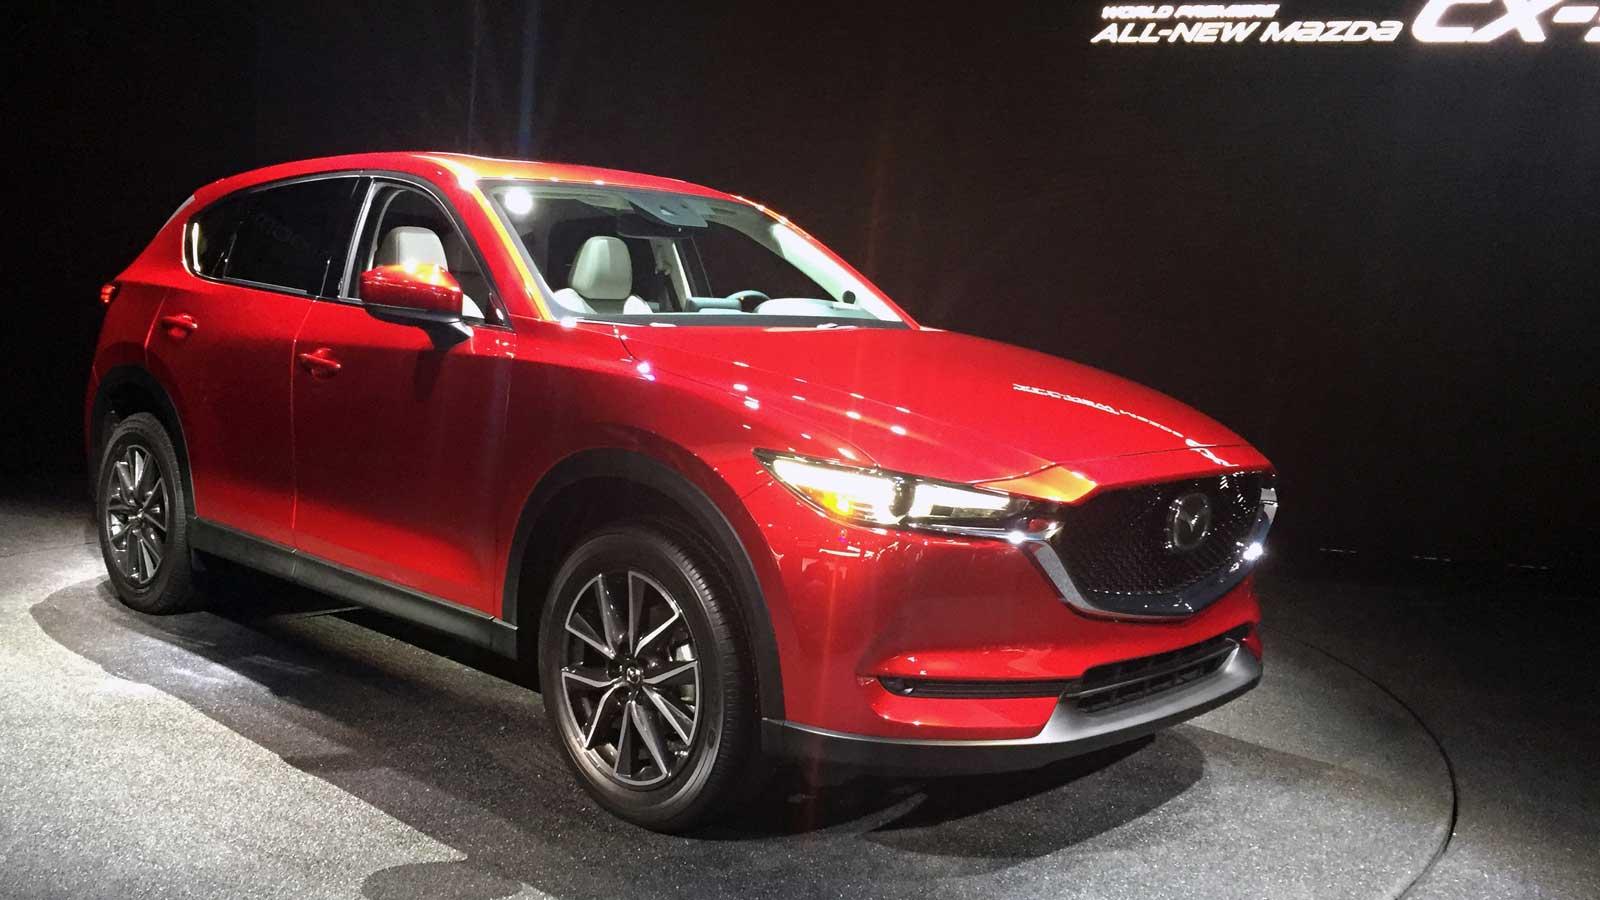 Entre las primicis de LA Auto Show, la nueva (y más liviana y tecnológica) edición del SUV medio Mazda MX-5